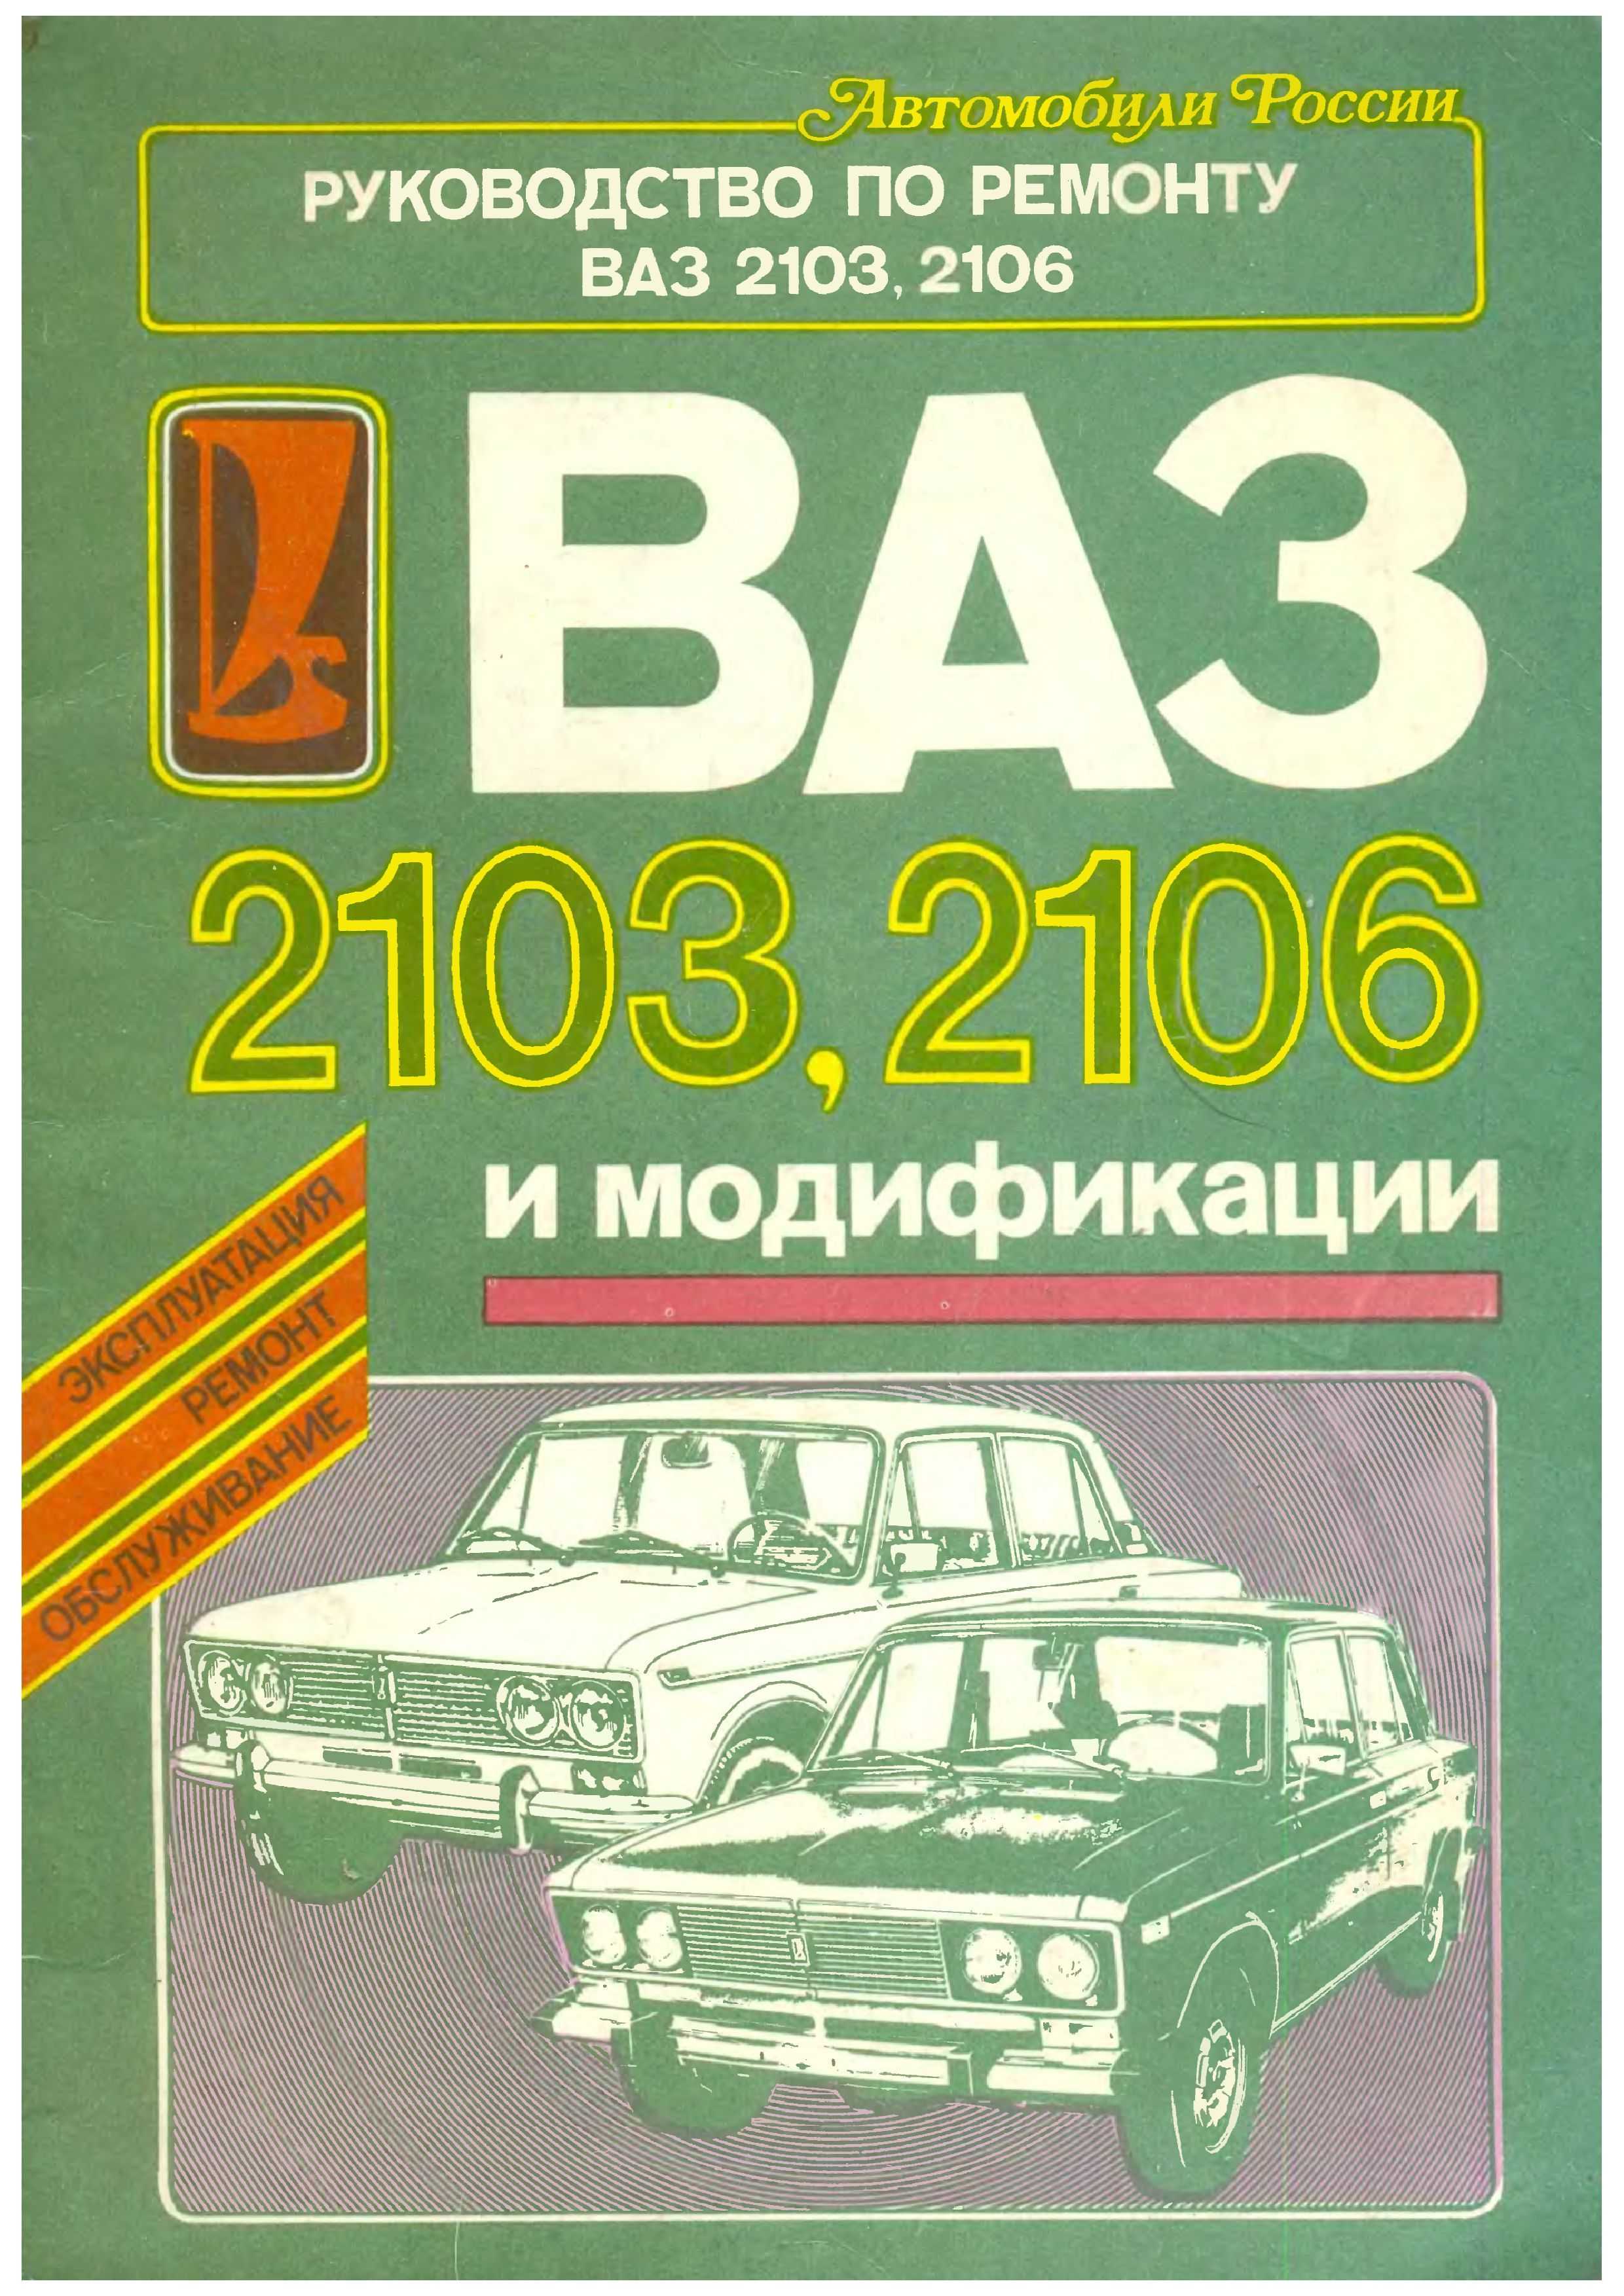 Руководство по ремонту ваз 2106 (жигули) 1976-2005 г.в. . описания, схемы, фото